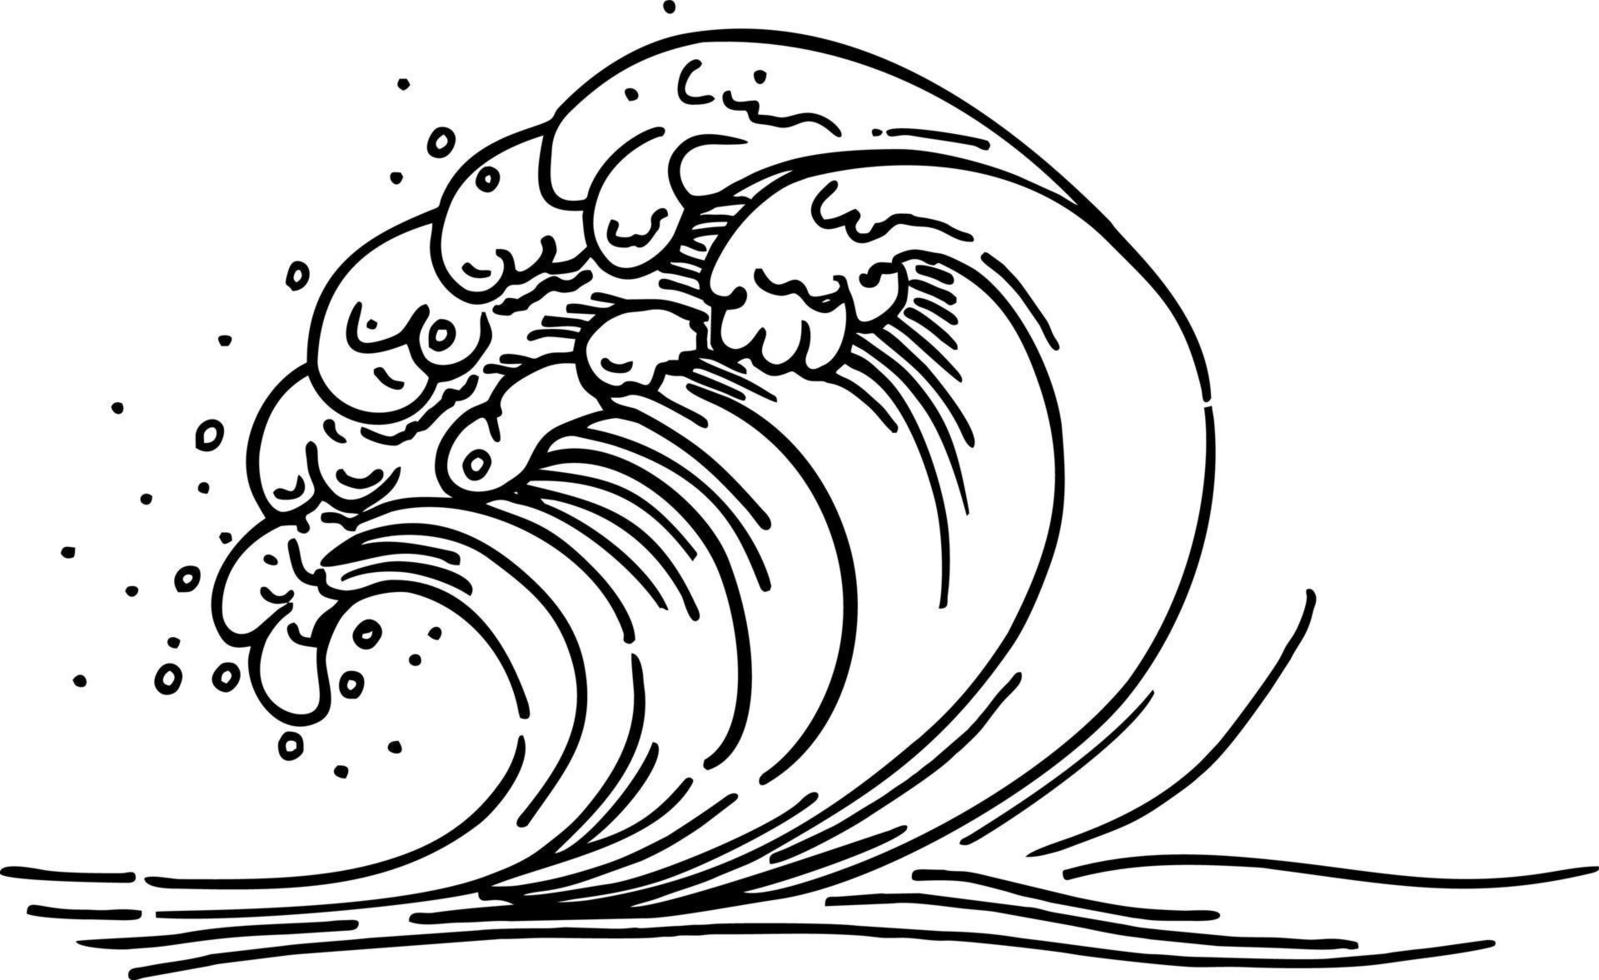 contour de la vague de la mer. crête des vagues de la mer. croquis dessiné à la main avec fond transparent. illustration vectorielle monochrome linéaire. vecteur